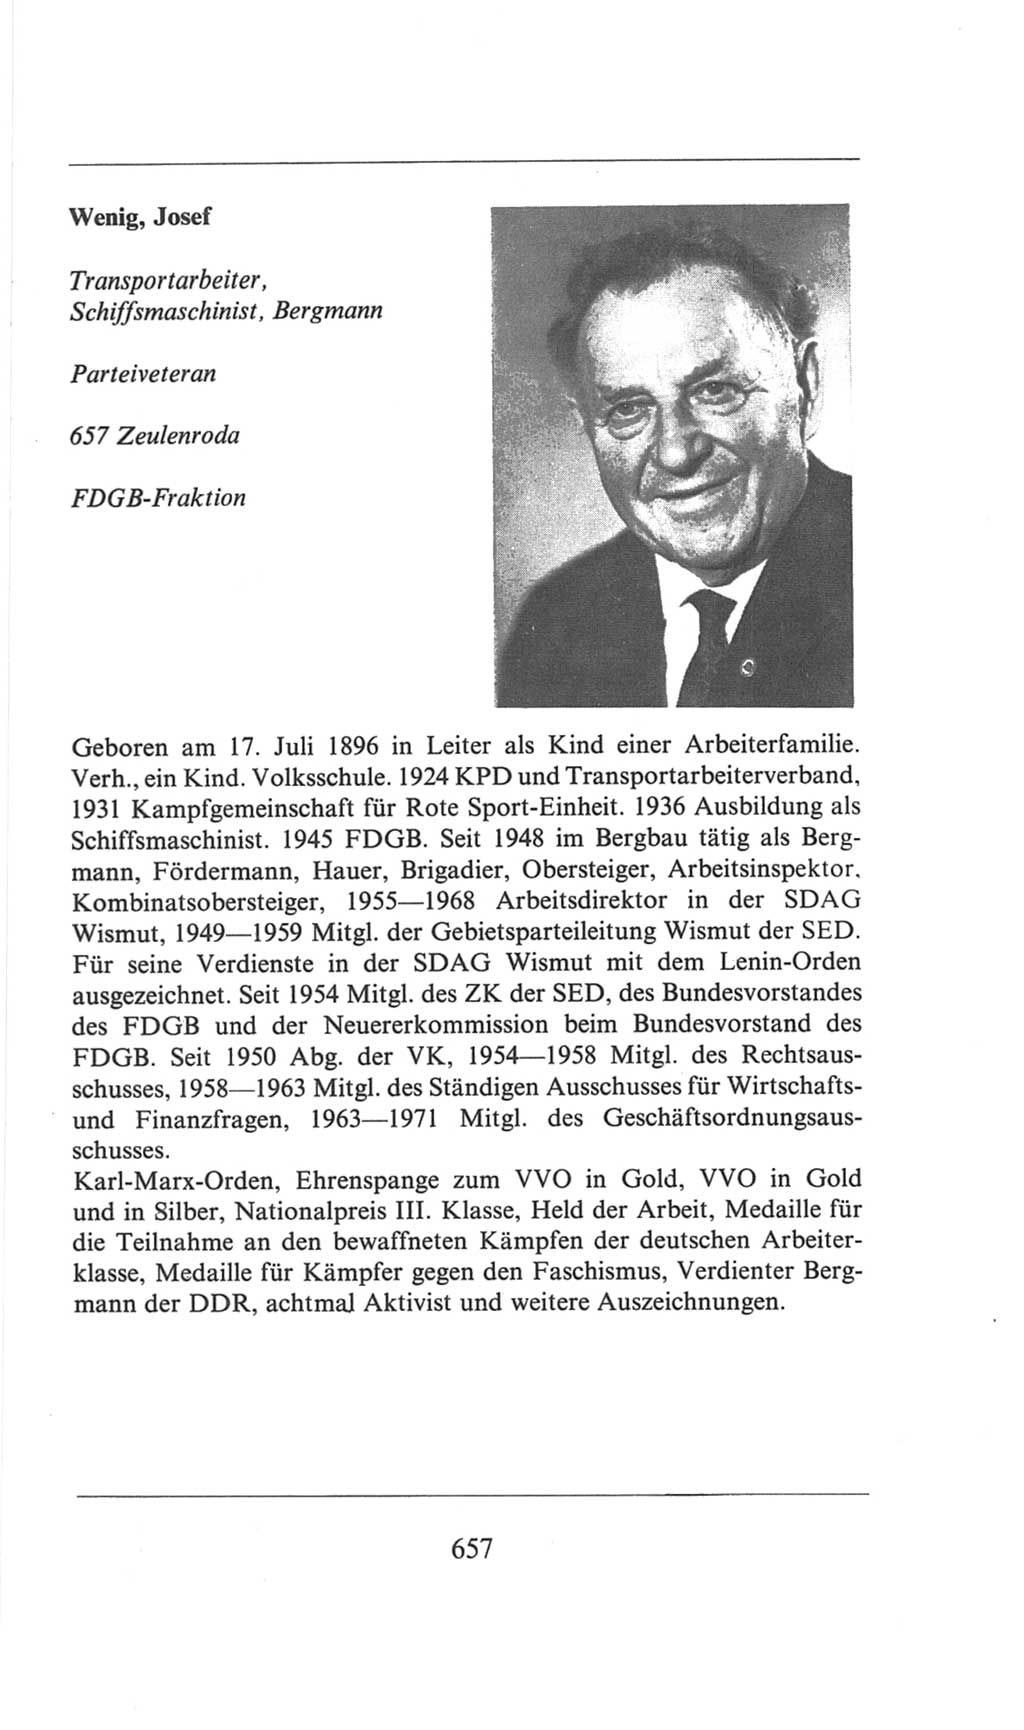 Volkskammer (VK) der Deutschen Demokratischen Republik (DDR), 6. Wahlperiode 1971-1976, Seite 657 (VK. DDR 6. WP. 1971-1976, S. 657)